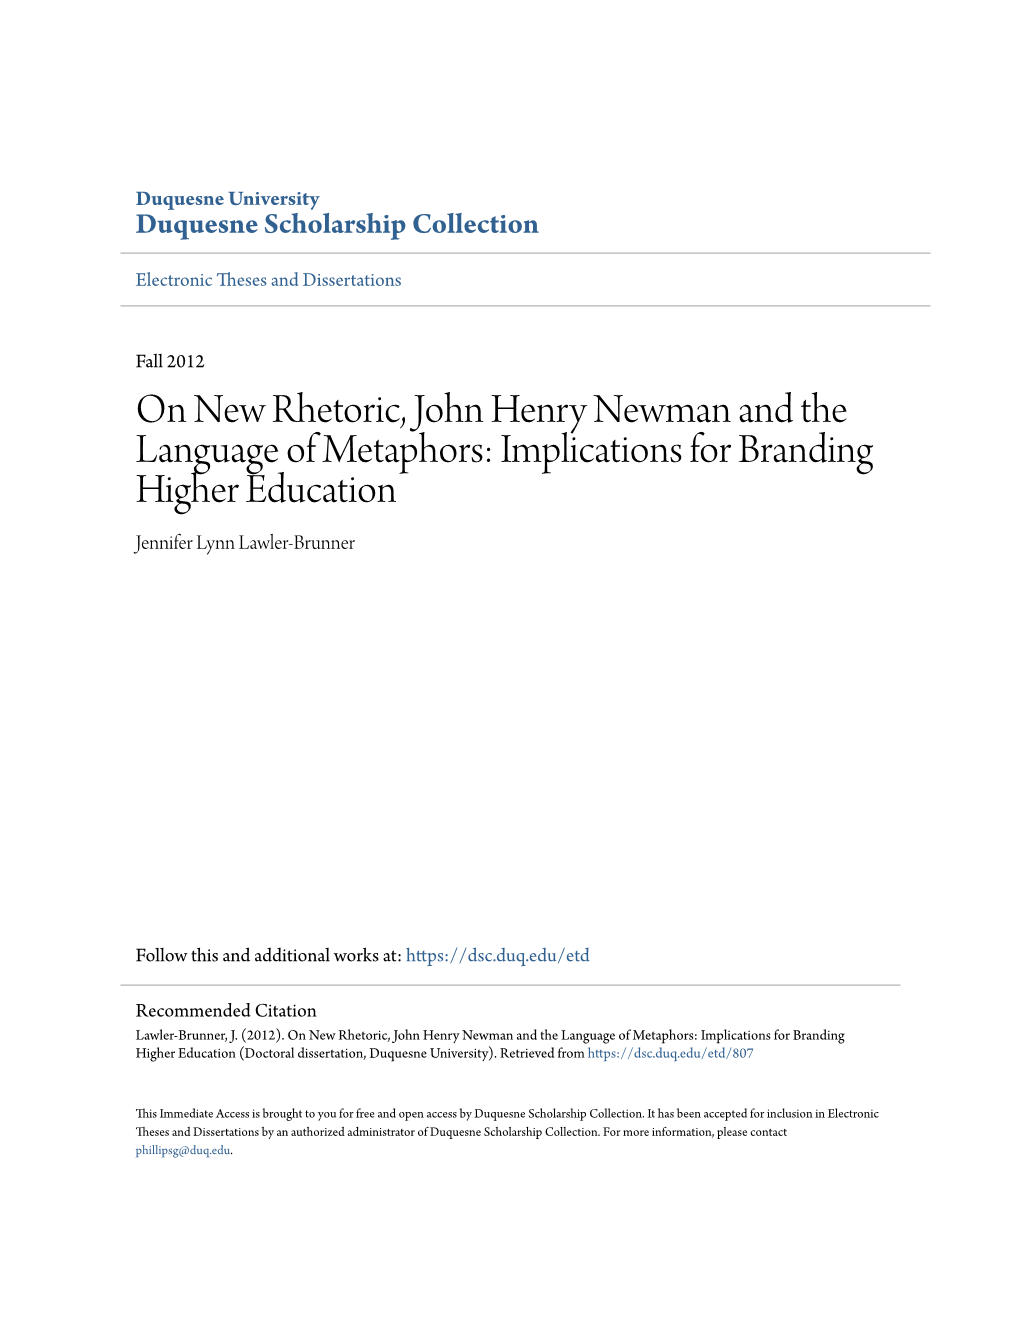 On New Rhetoric, John Henry Newman and the Language of Metaphors: Implications for Branding Higher Education Jennifer Lynn Lawler-Brunner